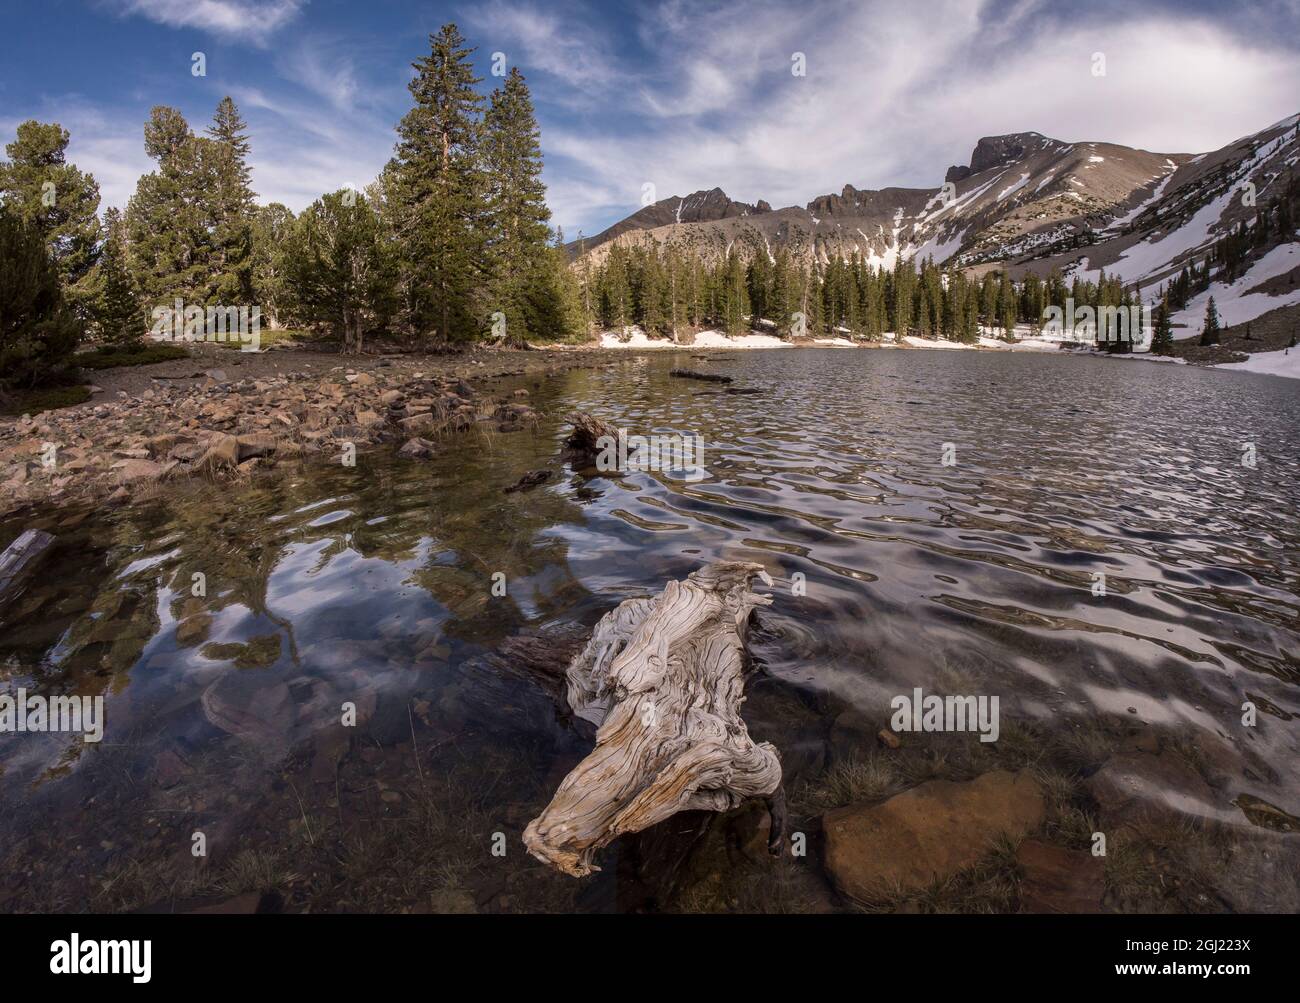 Stella Lake, Wheeler Peak, parc national de Great Basin à 10,000 mètres, après la fin de Wheeler Peak Scenic Drive, Nevada Banque D'Images